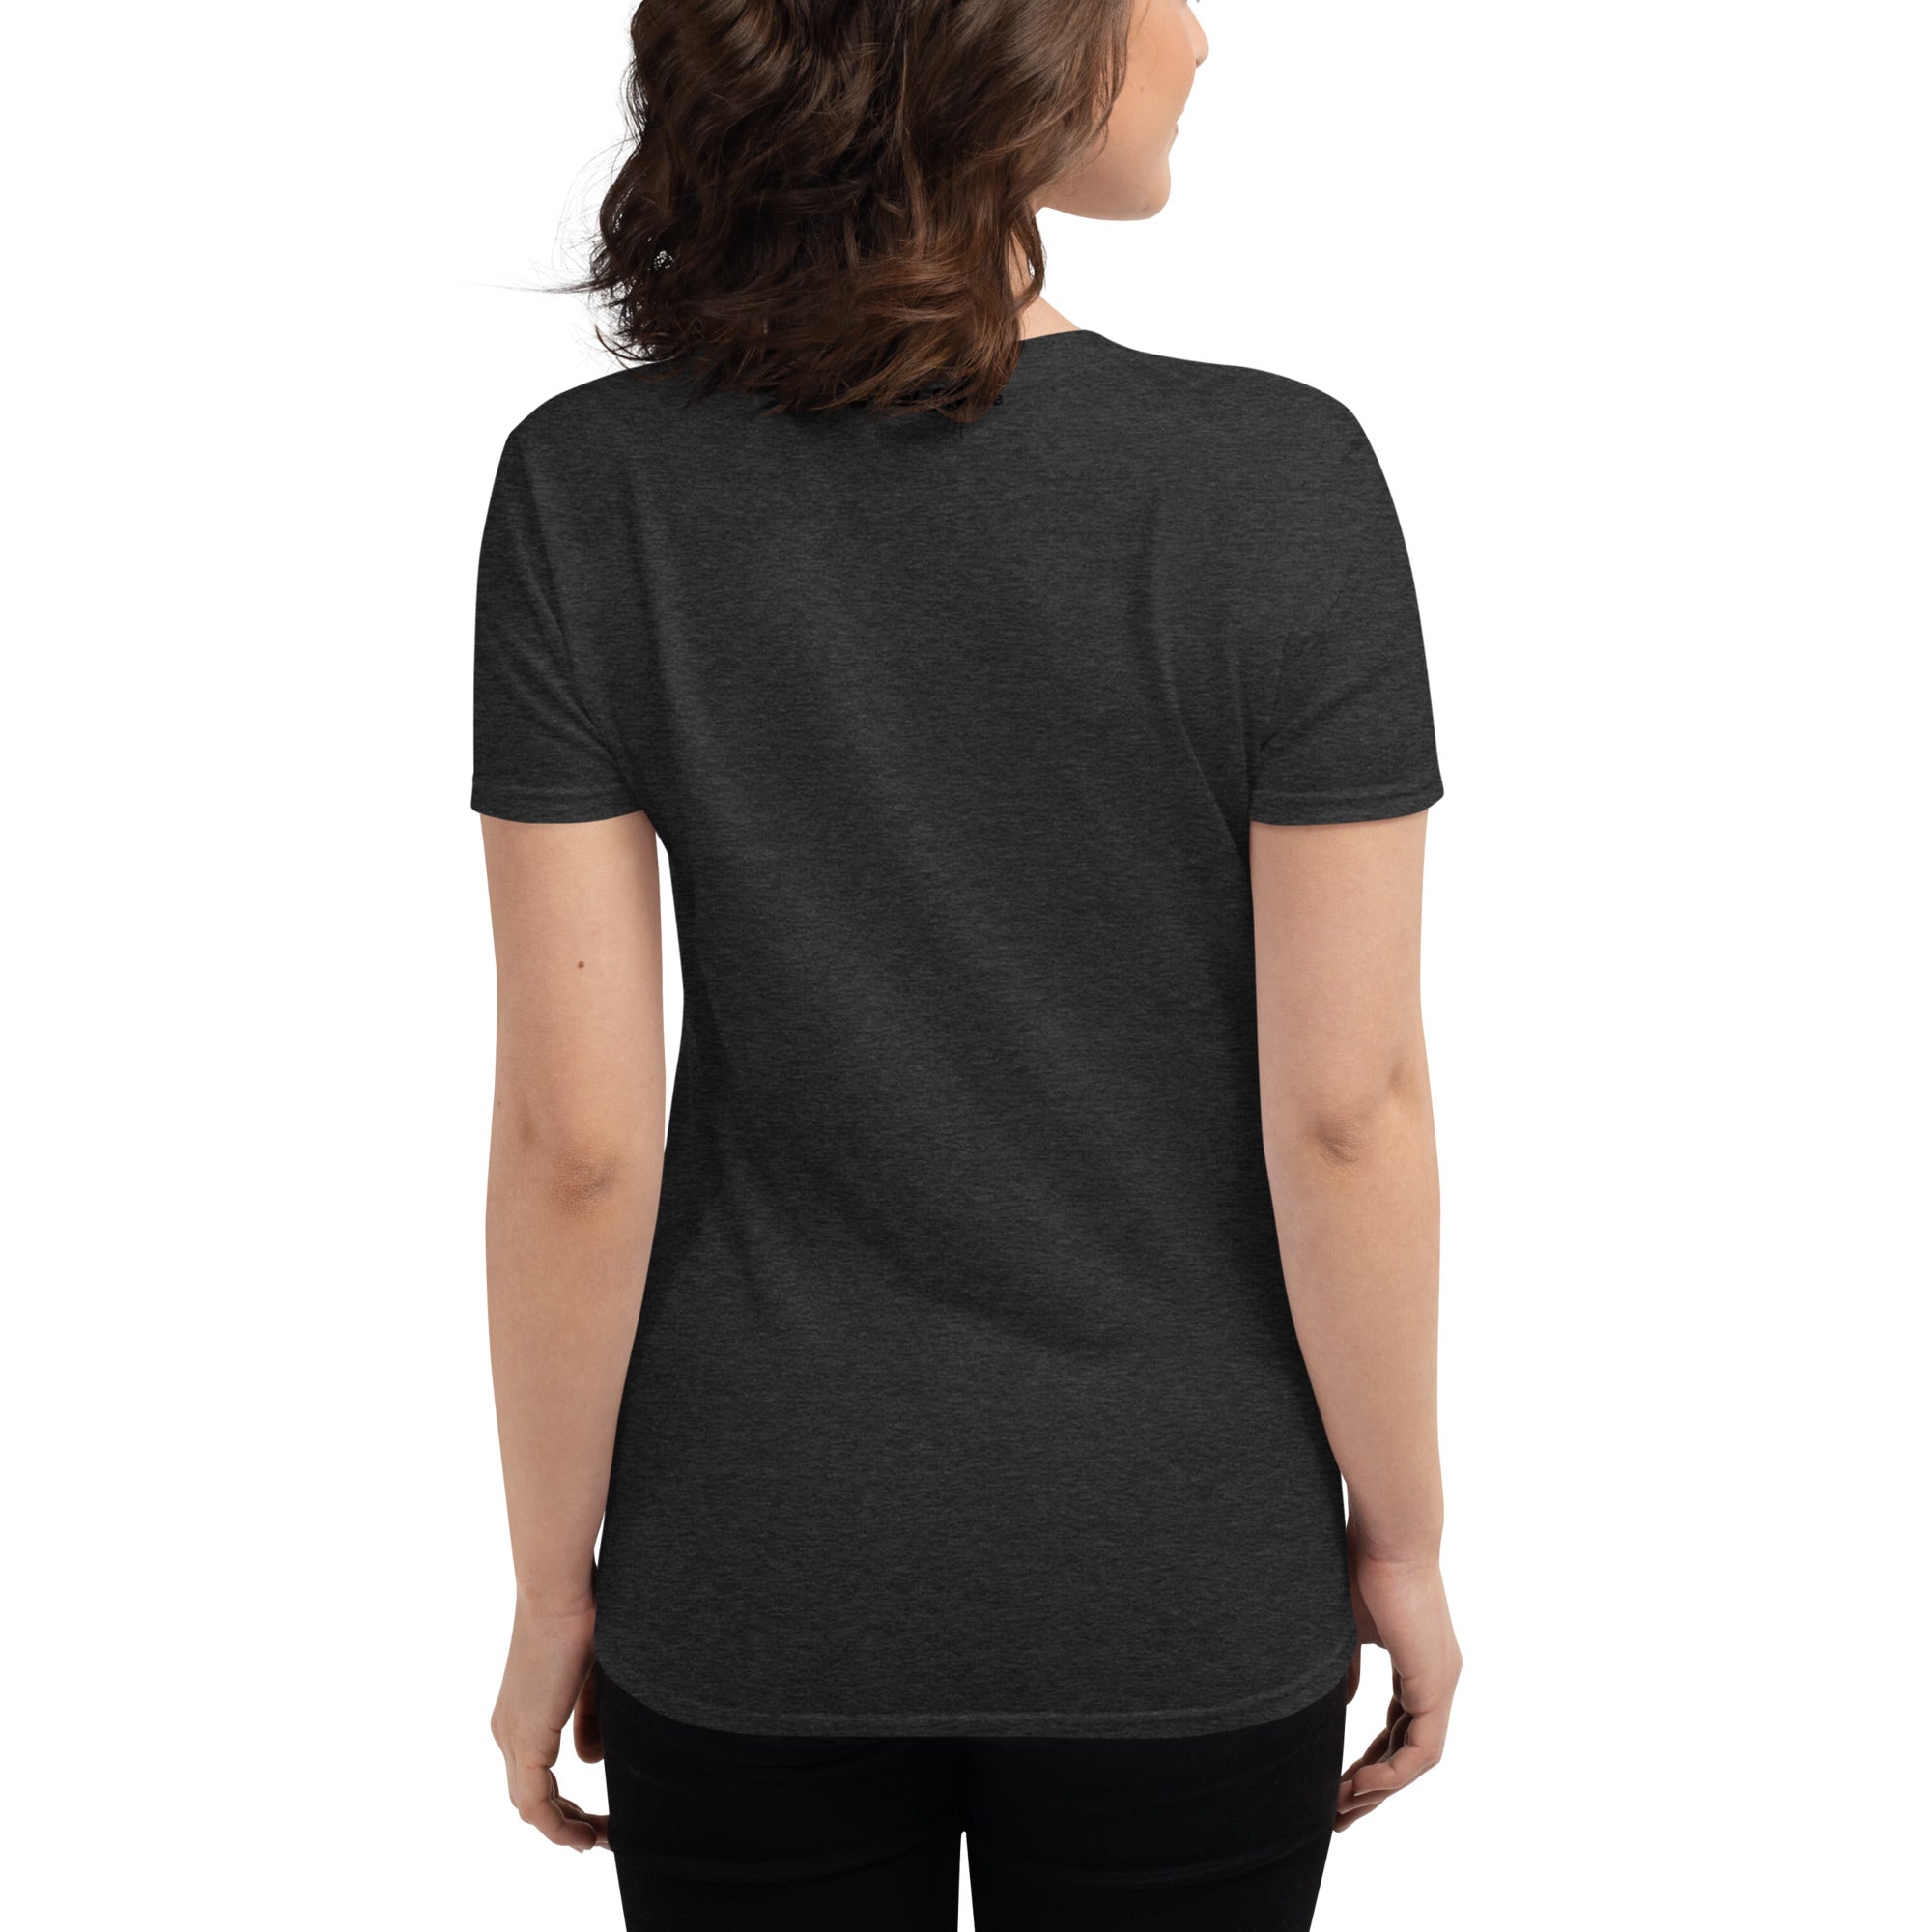 Greyhound Women's short sleeve t-shirt